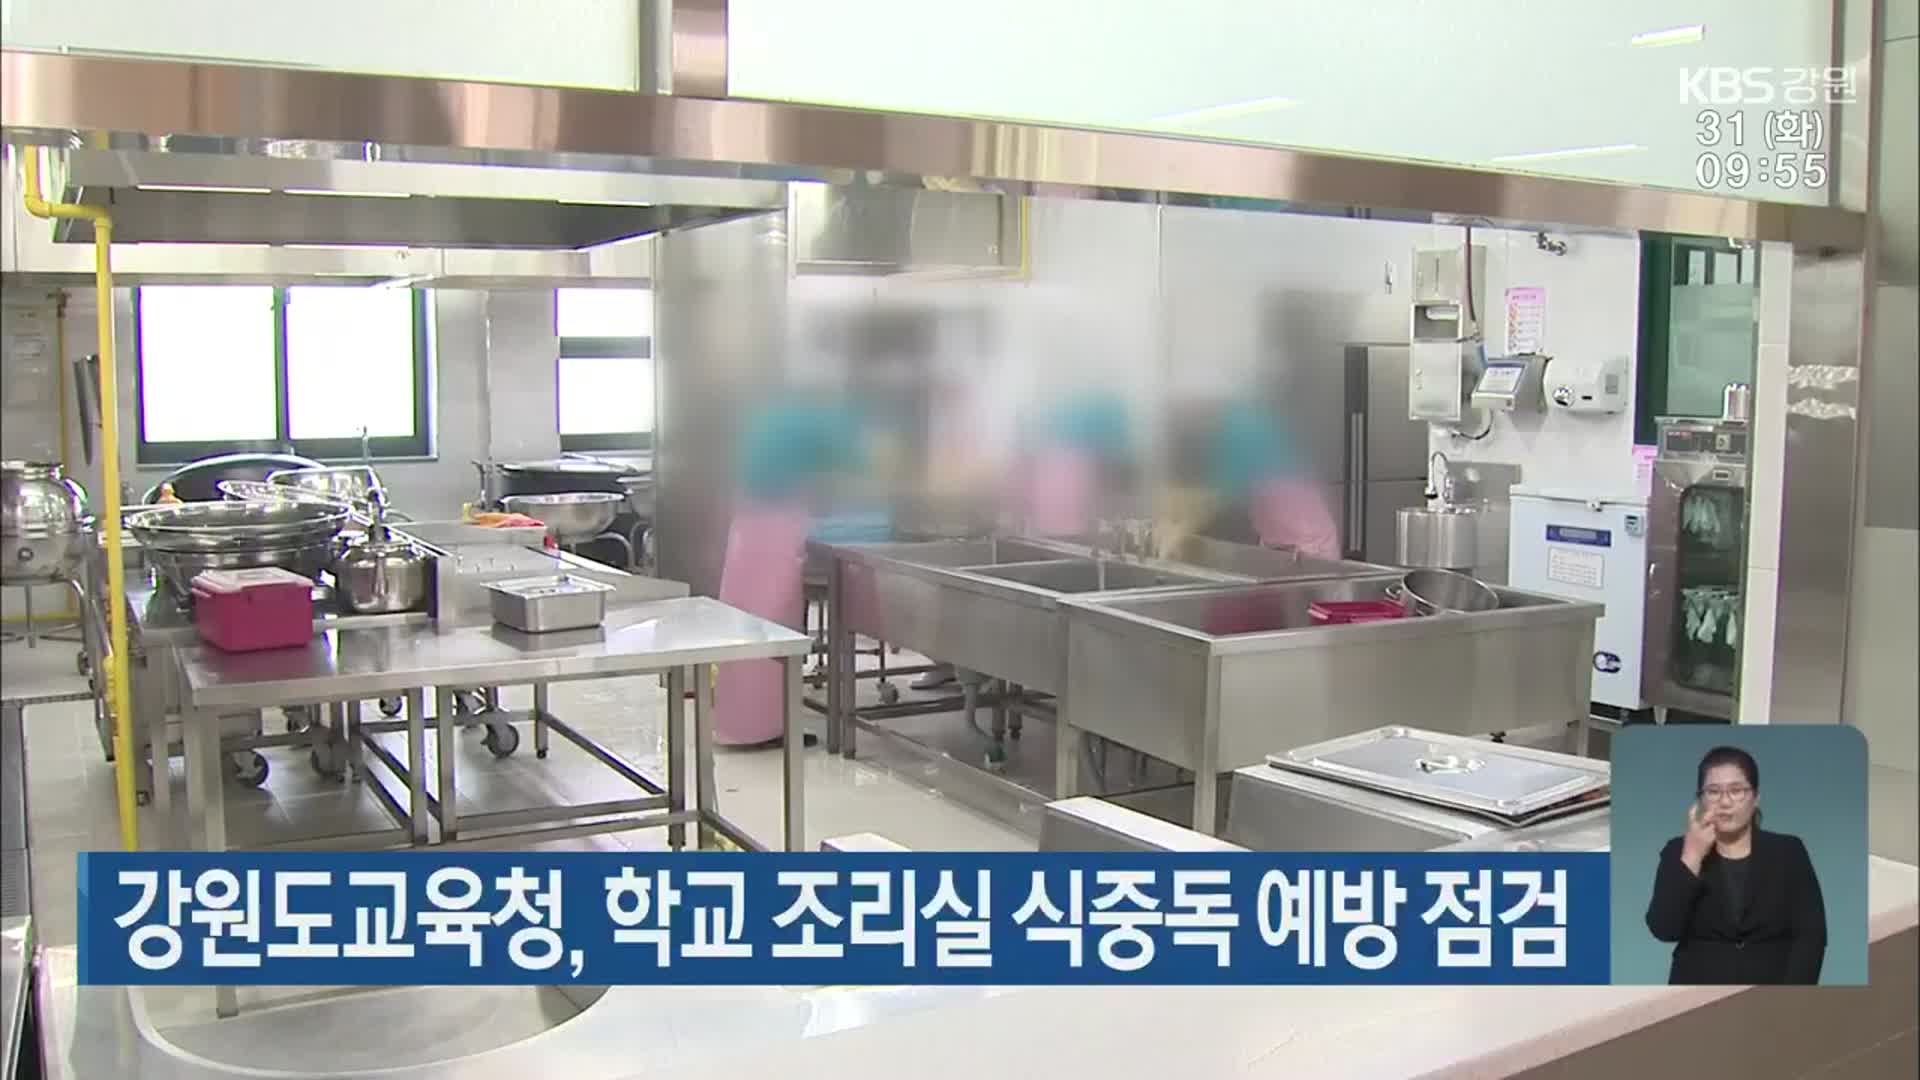 강원도교육청, 학교 조리실 식중독 예방 점검